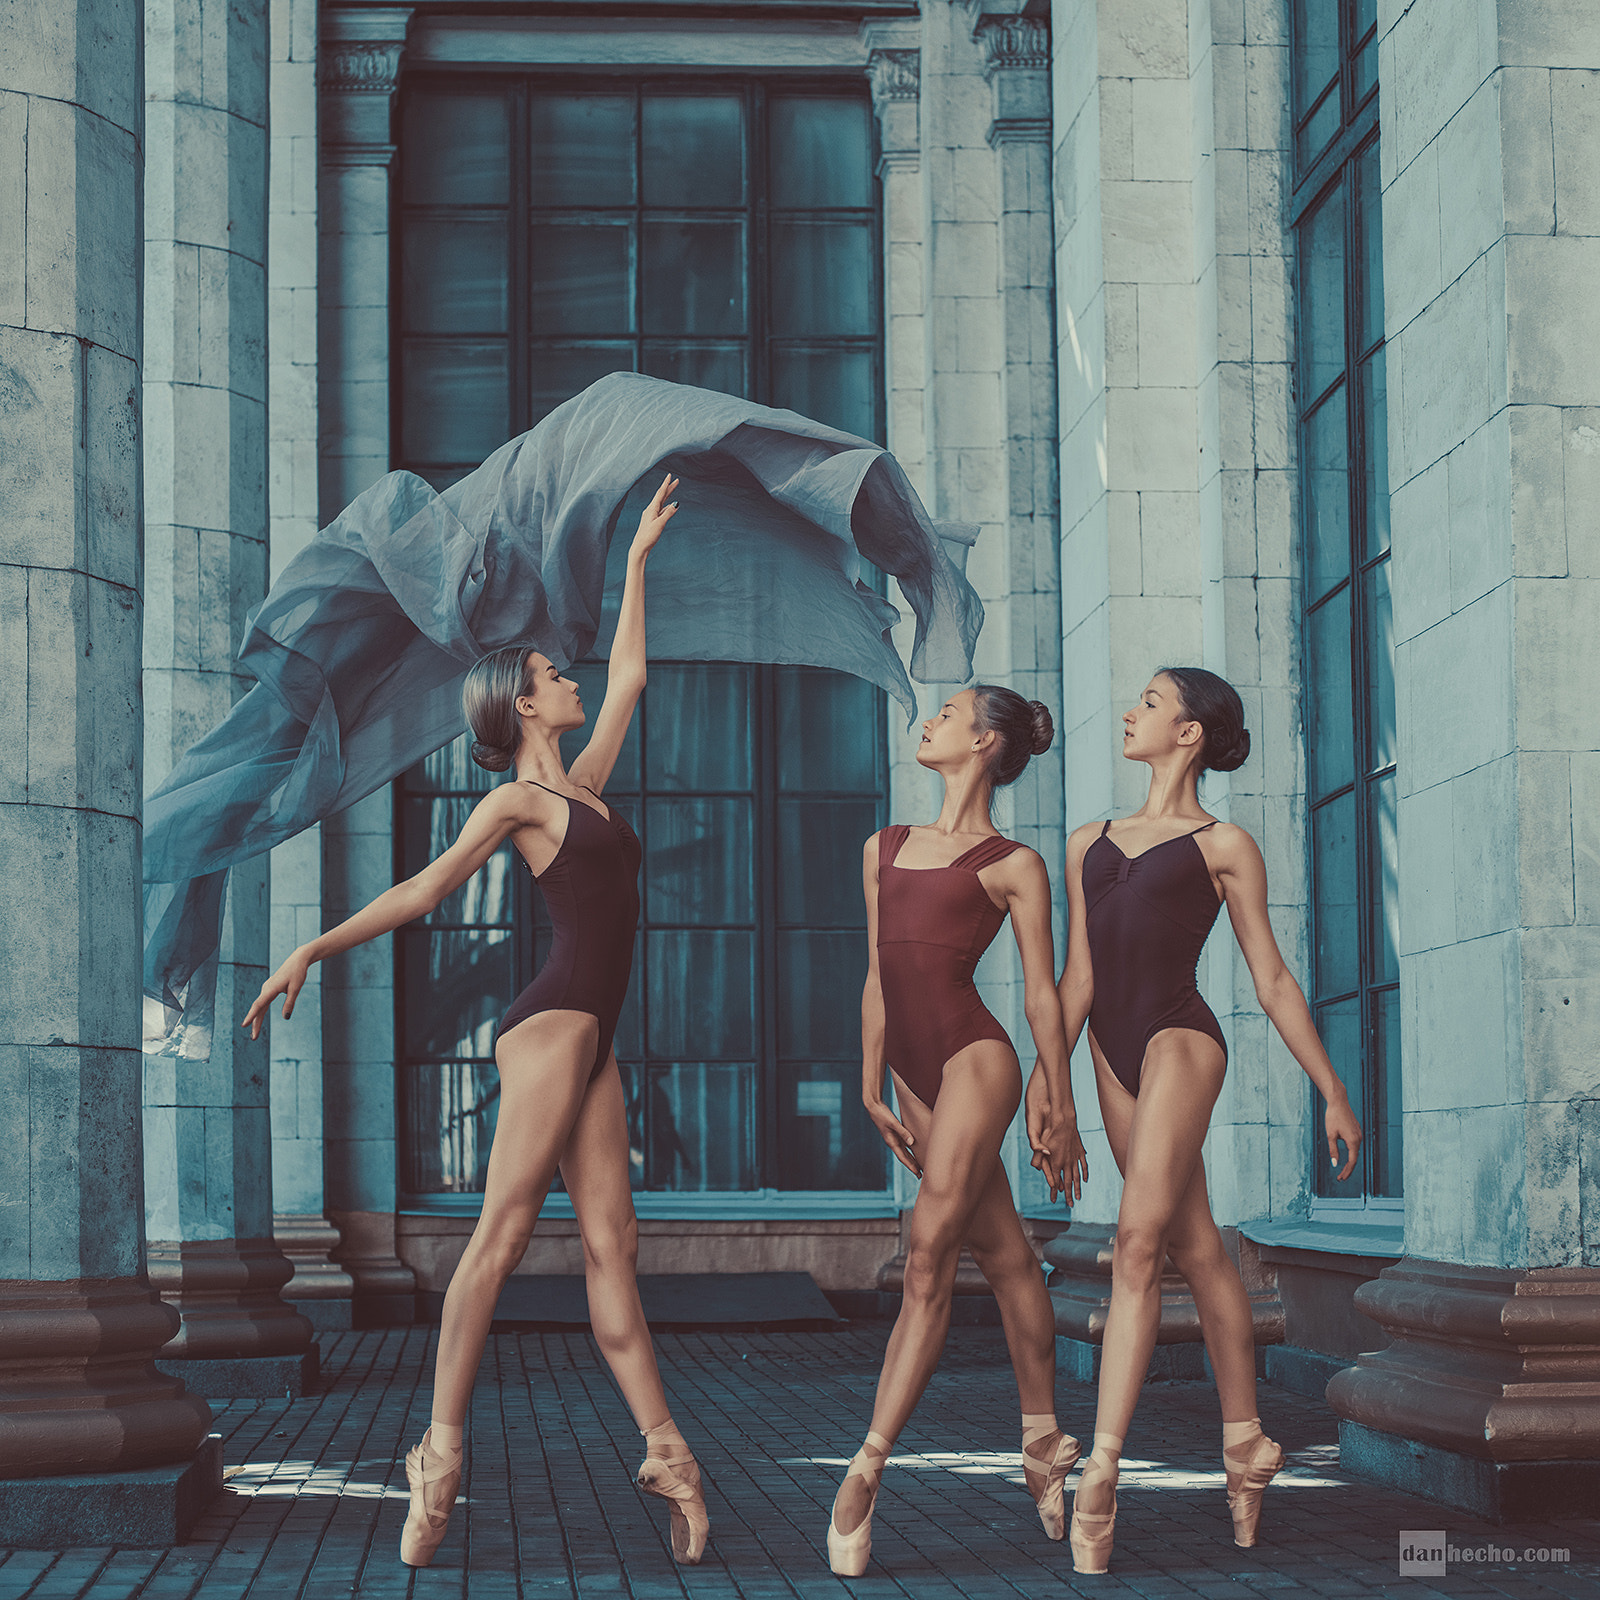 People 1600x1600 Dan Hecho women ballerina group of women women trio standing legs bodysuit arms up dancer ballet slippers